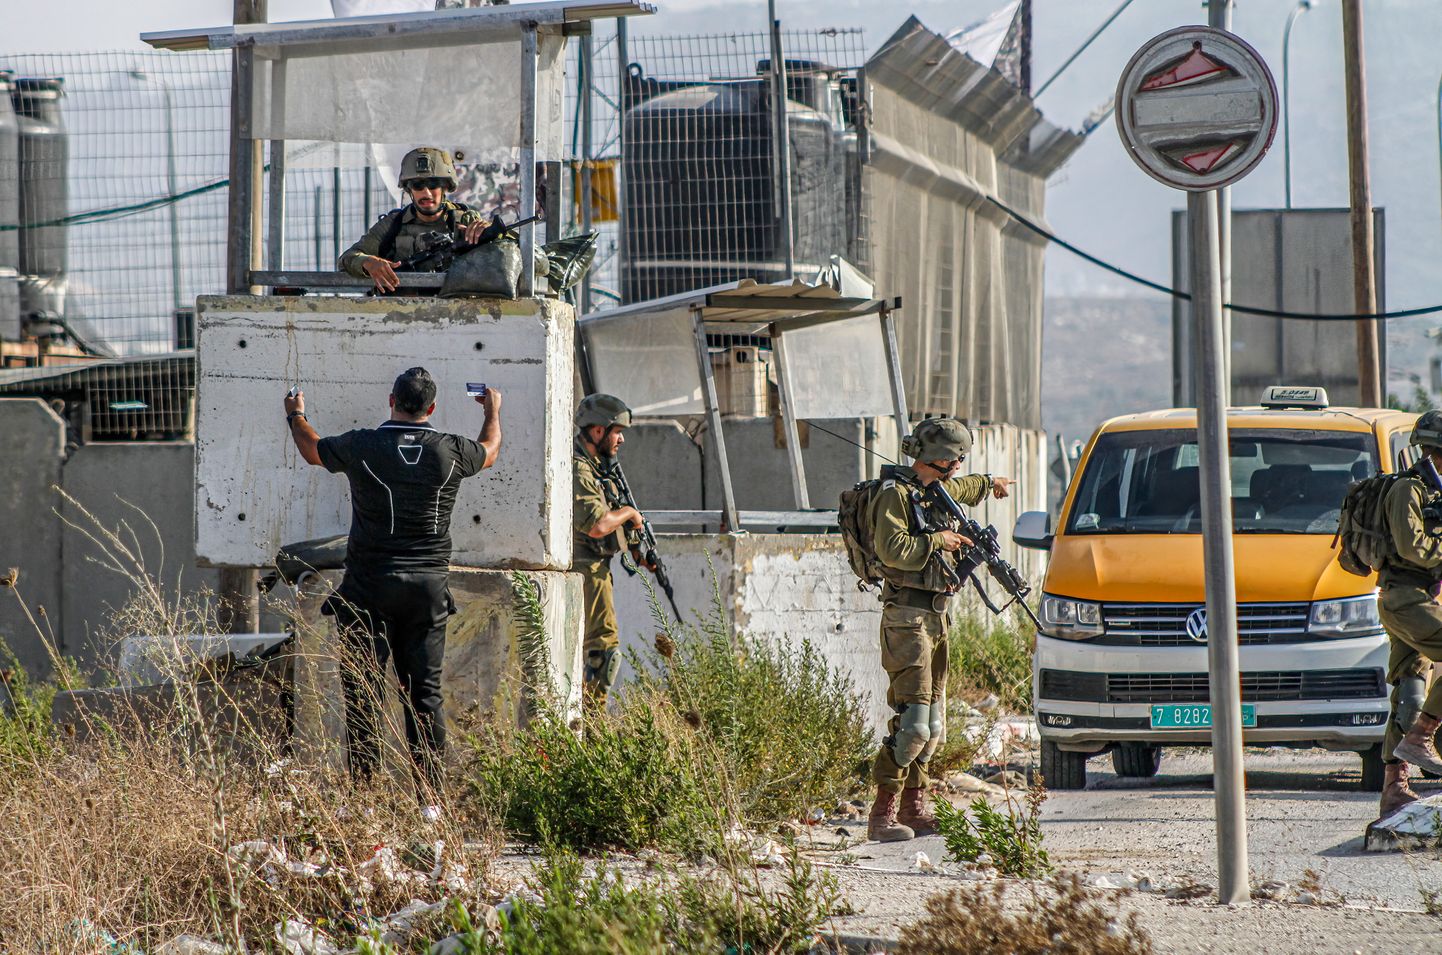 Palestiinlane vaidleb Iisraeli sõduritega Läänekaldal Nabluses kontrollpunkti juures, kus ta hiljem ka kinni võeti. Sõjavägi viib piirkonnas läbi ulatuslikku operatsiooni, et tabada tulistaja, kes tappis laupäeval, 19. augustil Hawaras kaks juudiasunikku. Kontrollpunktide juurde olid tekkinud autodest pikad järjekorrad.